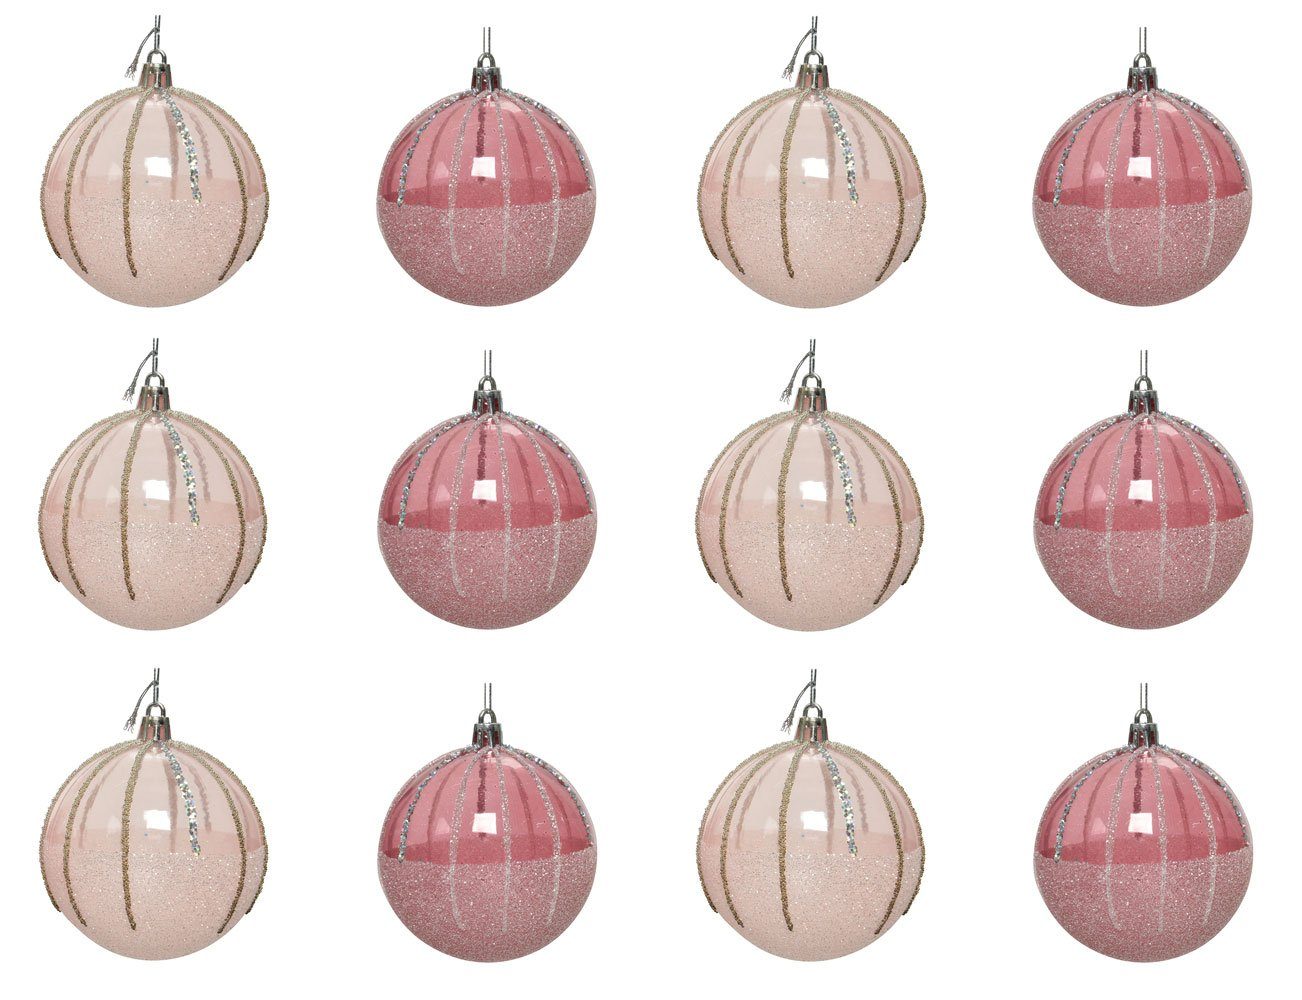 Decoris season decorations Weihnachtsbaumkugel, Weihnachtskugeln Kunststoff mit Muster 10cm rosa Mix, 12er Set